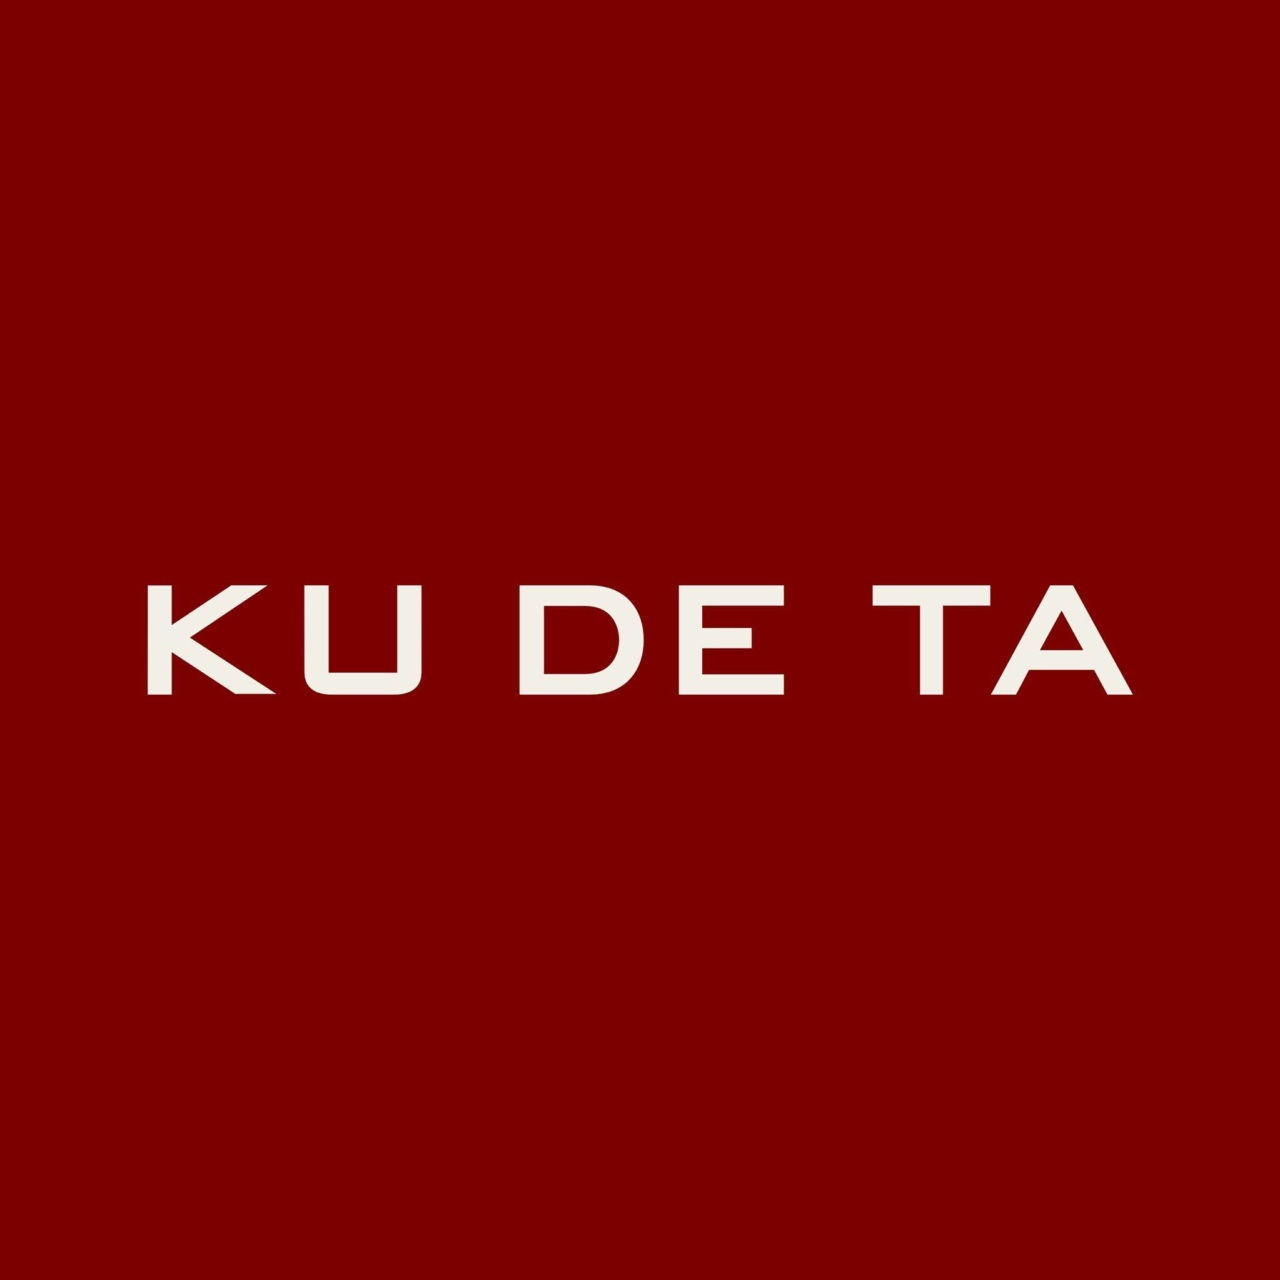 Kudeta-logo